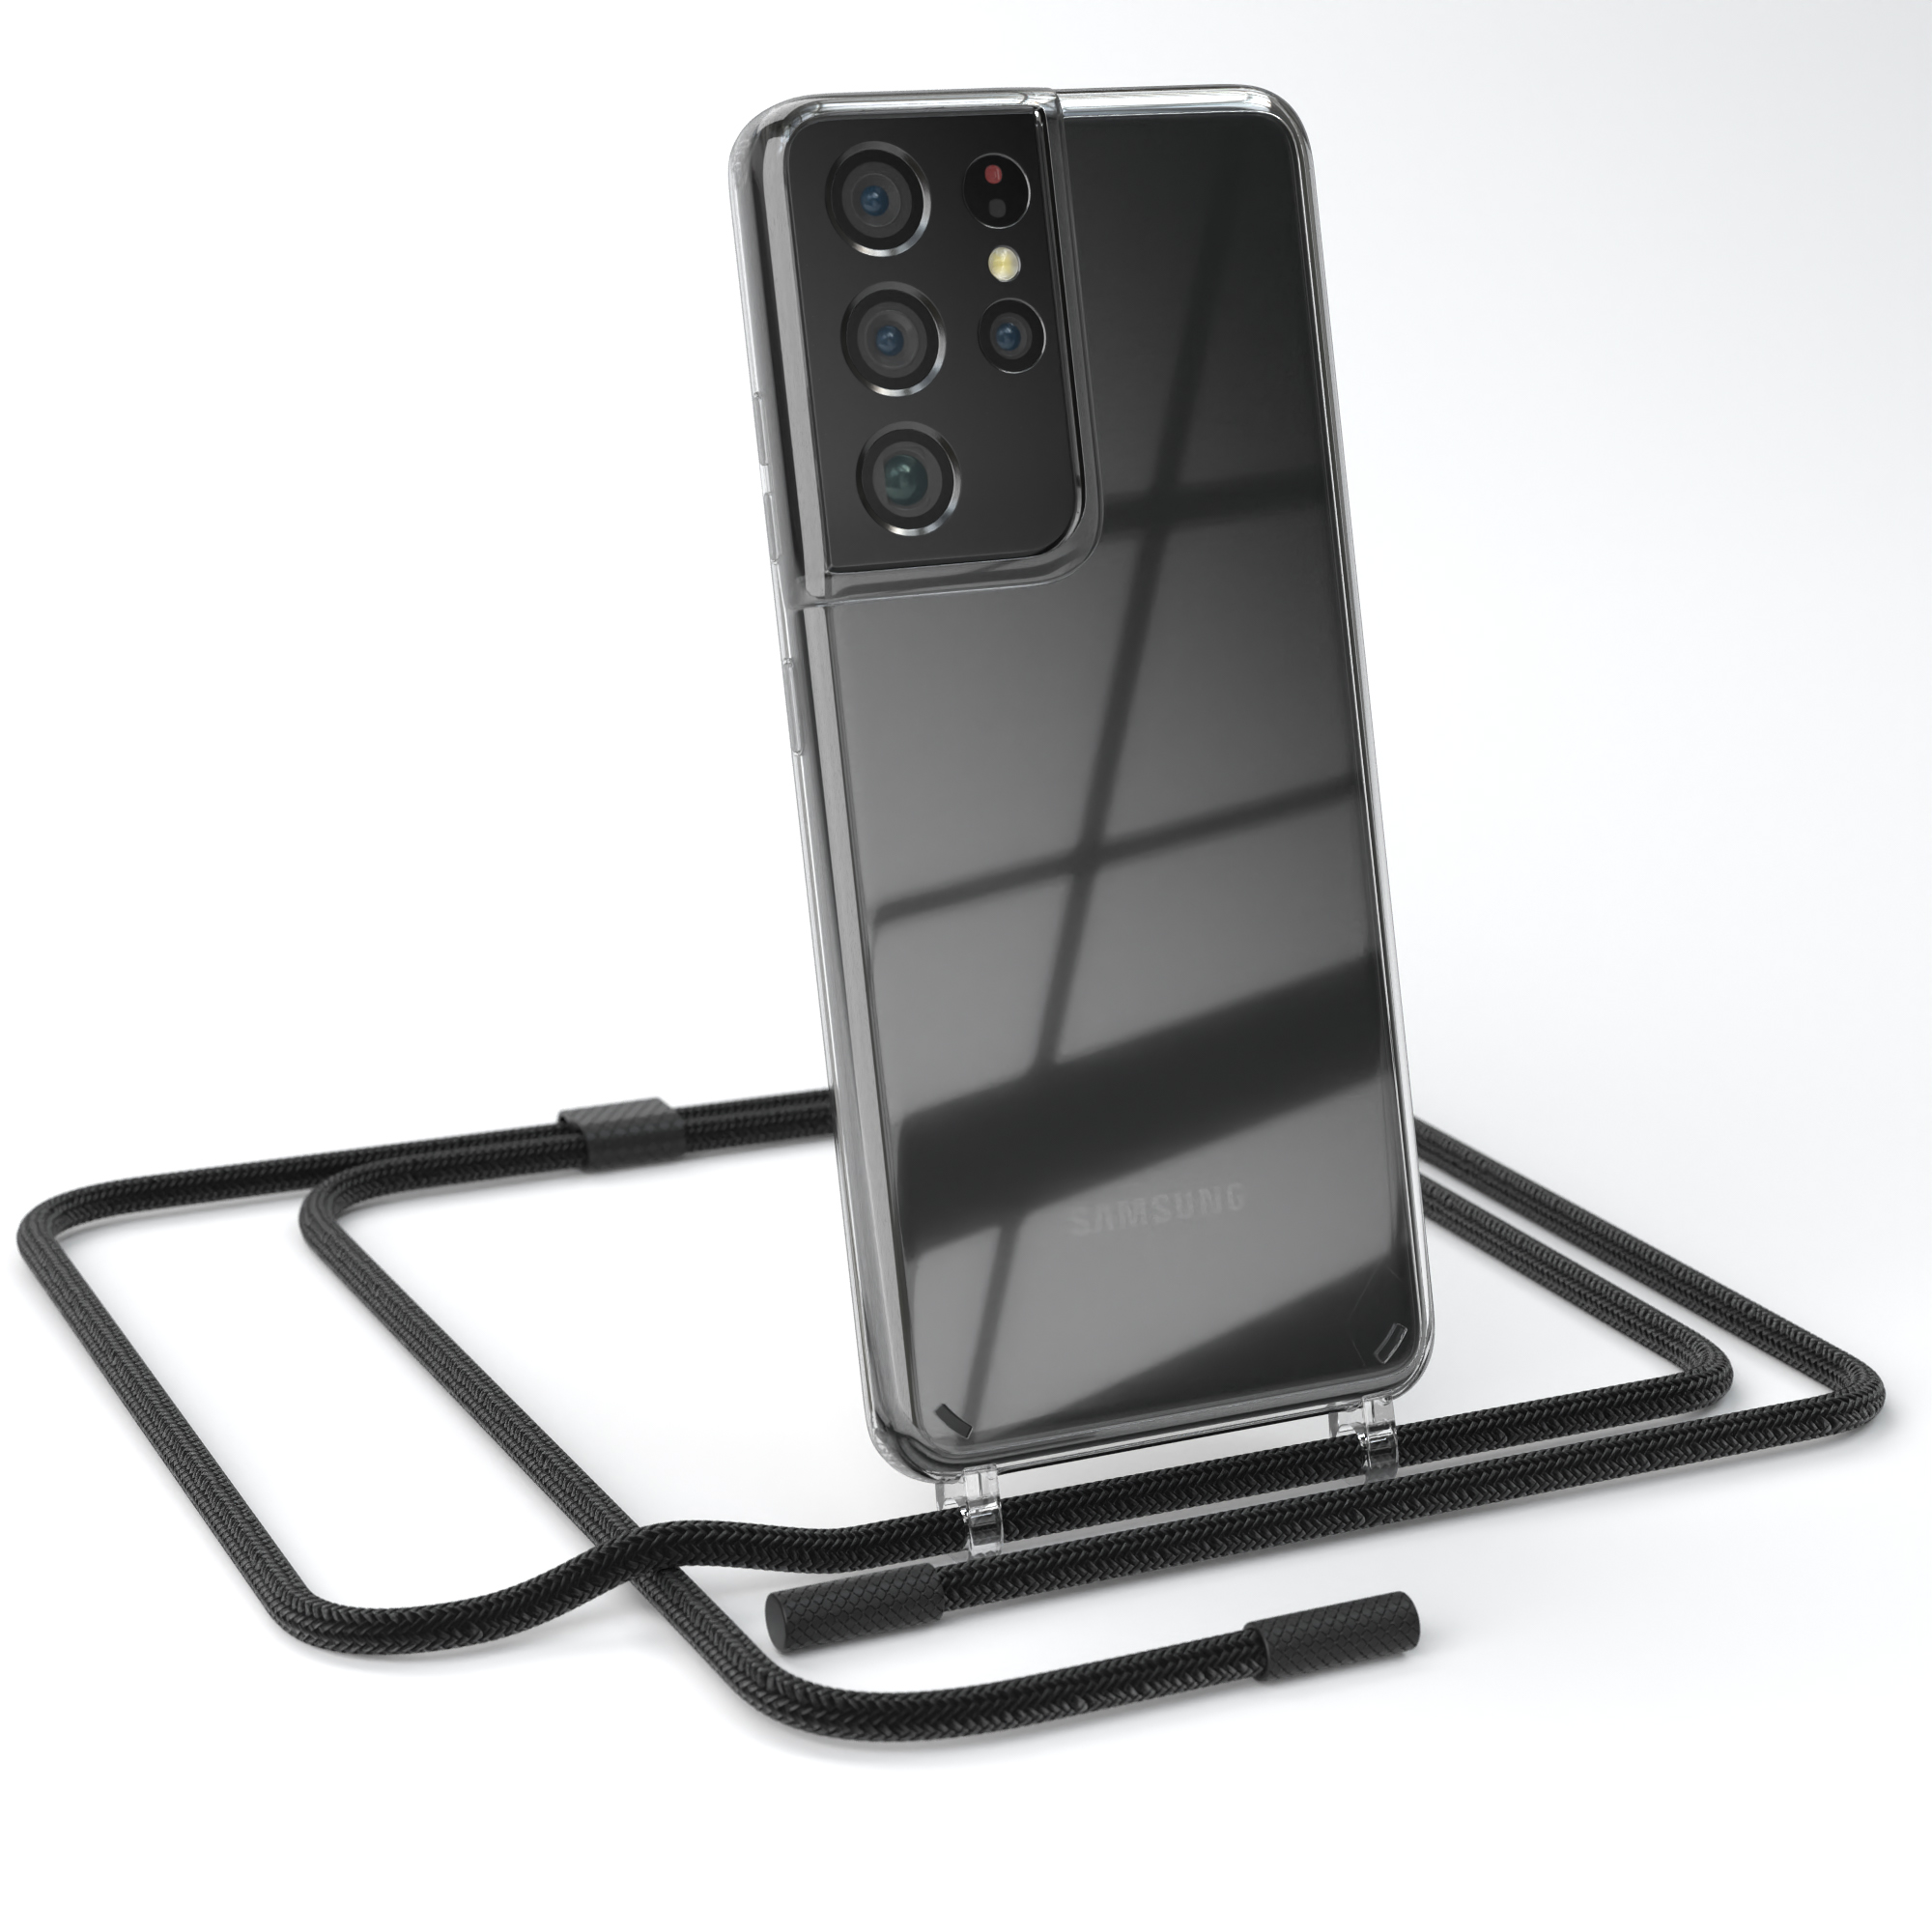 EAZY CASE Transparente Handyhülle mit Kette Ultra Umhängetasche, unifarbend, Samsung, runder Galaxy S21 5G, Schwarz